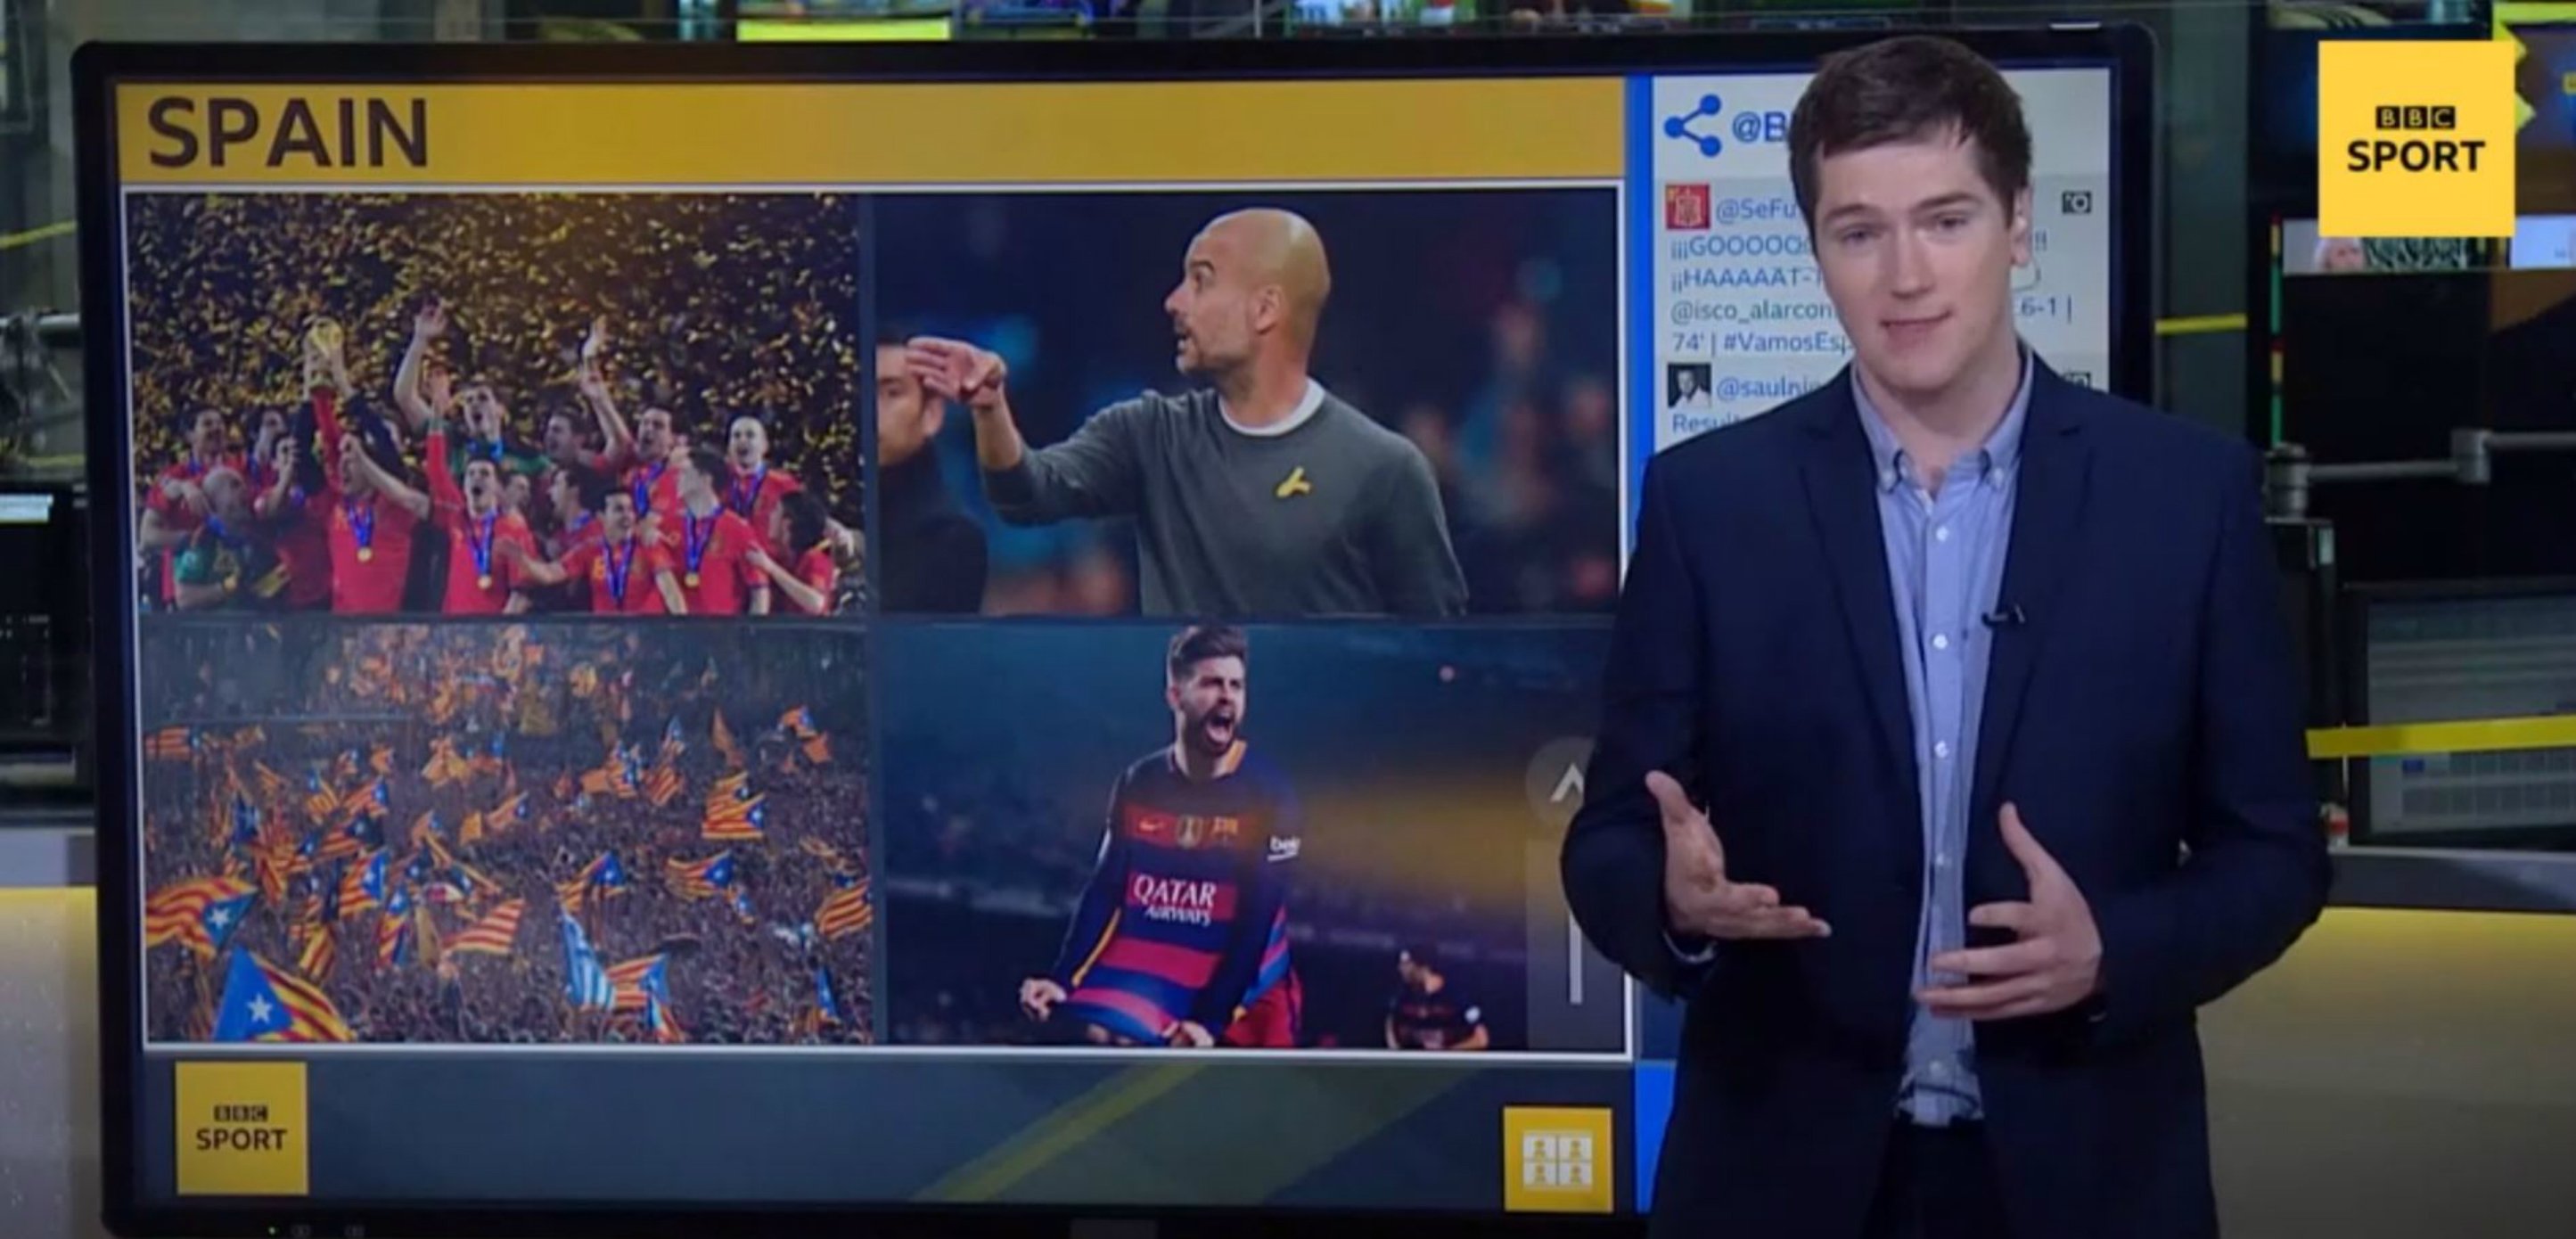 BBC: "Molts catalans donen suport als rivals d'Espanya en el Mundial"